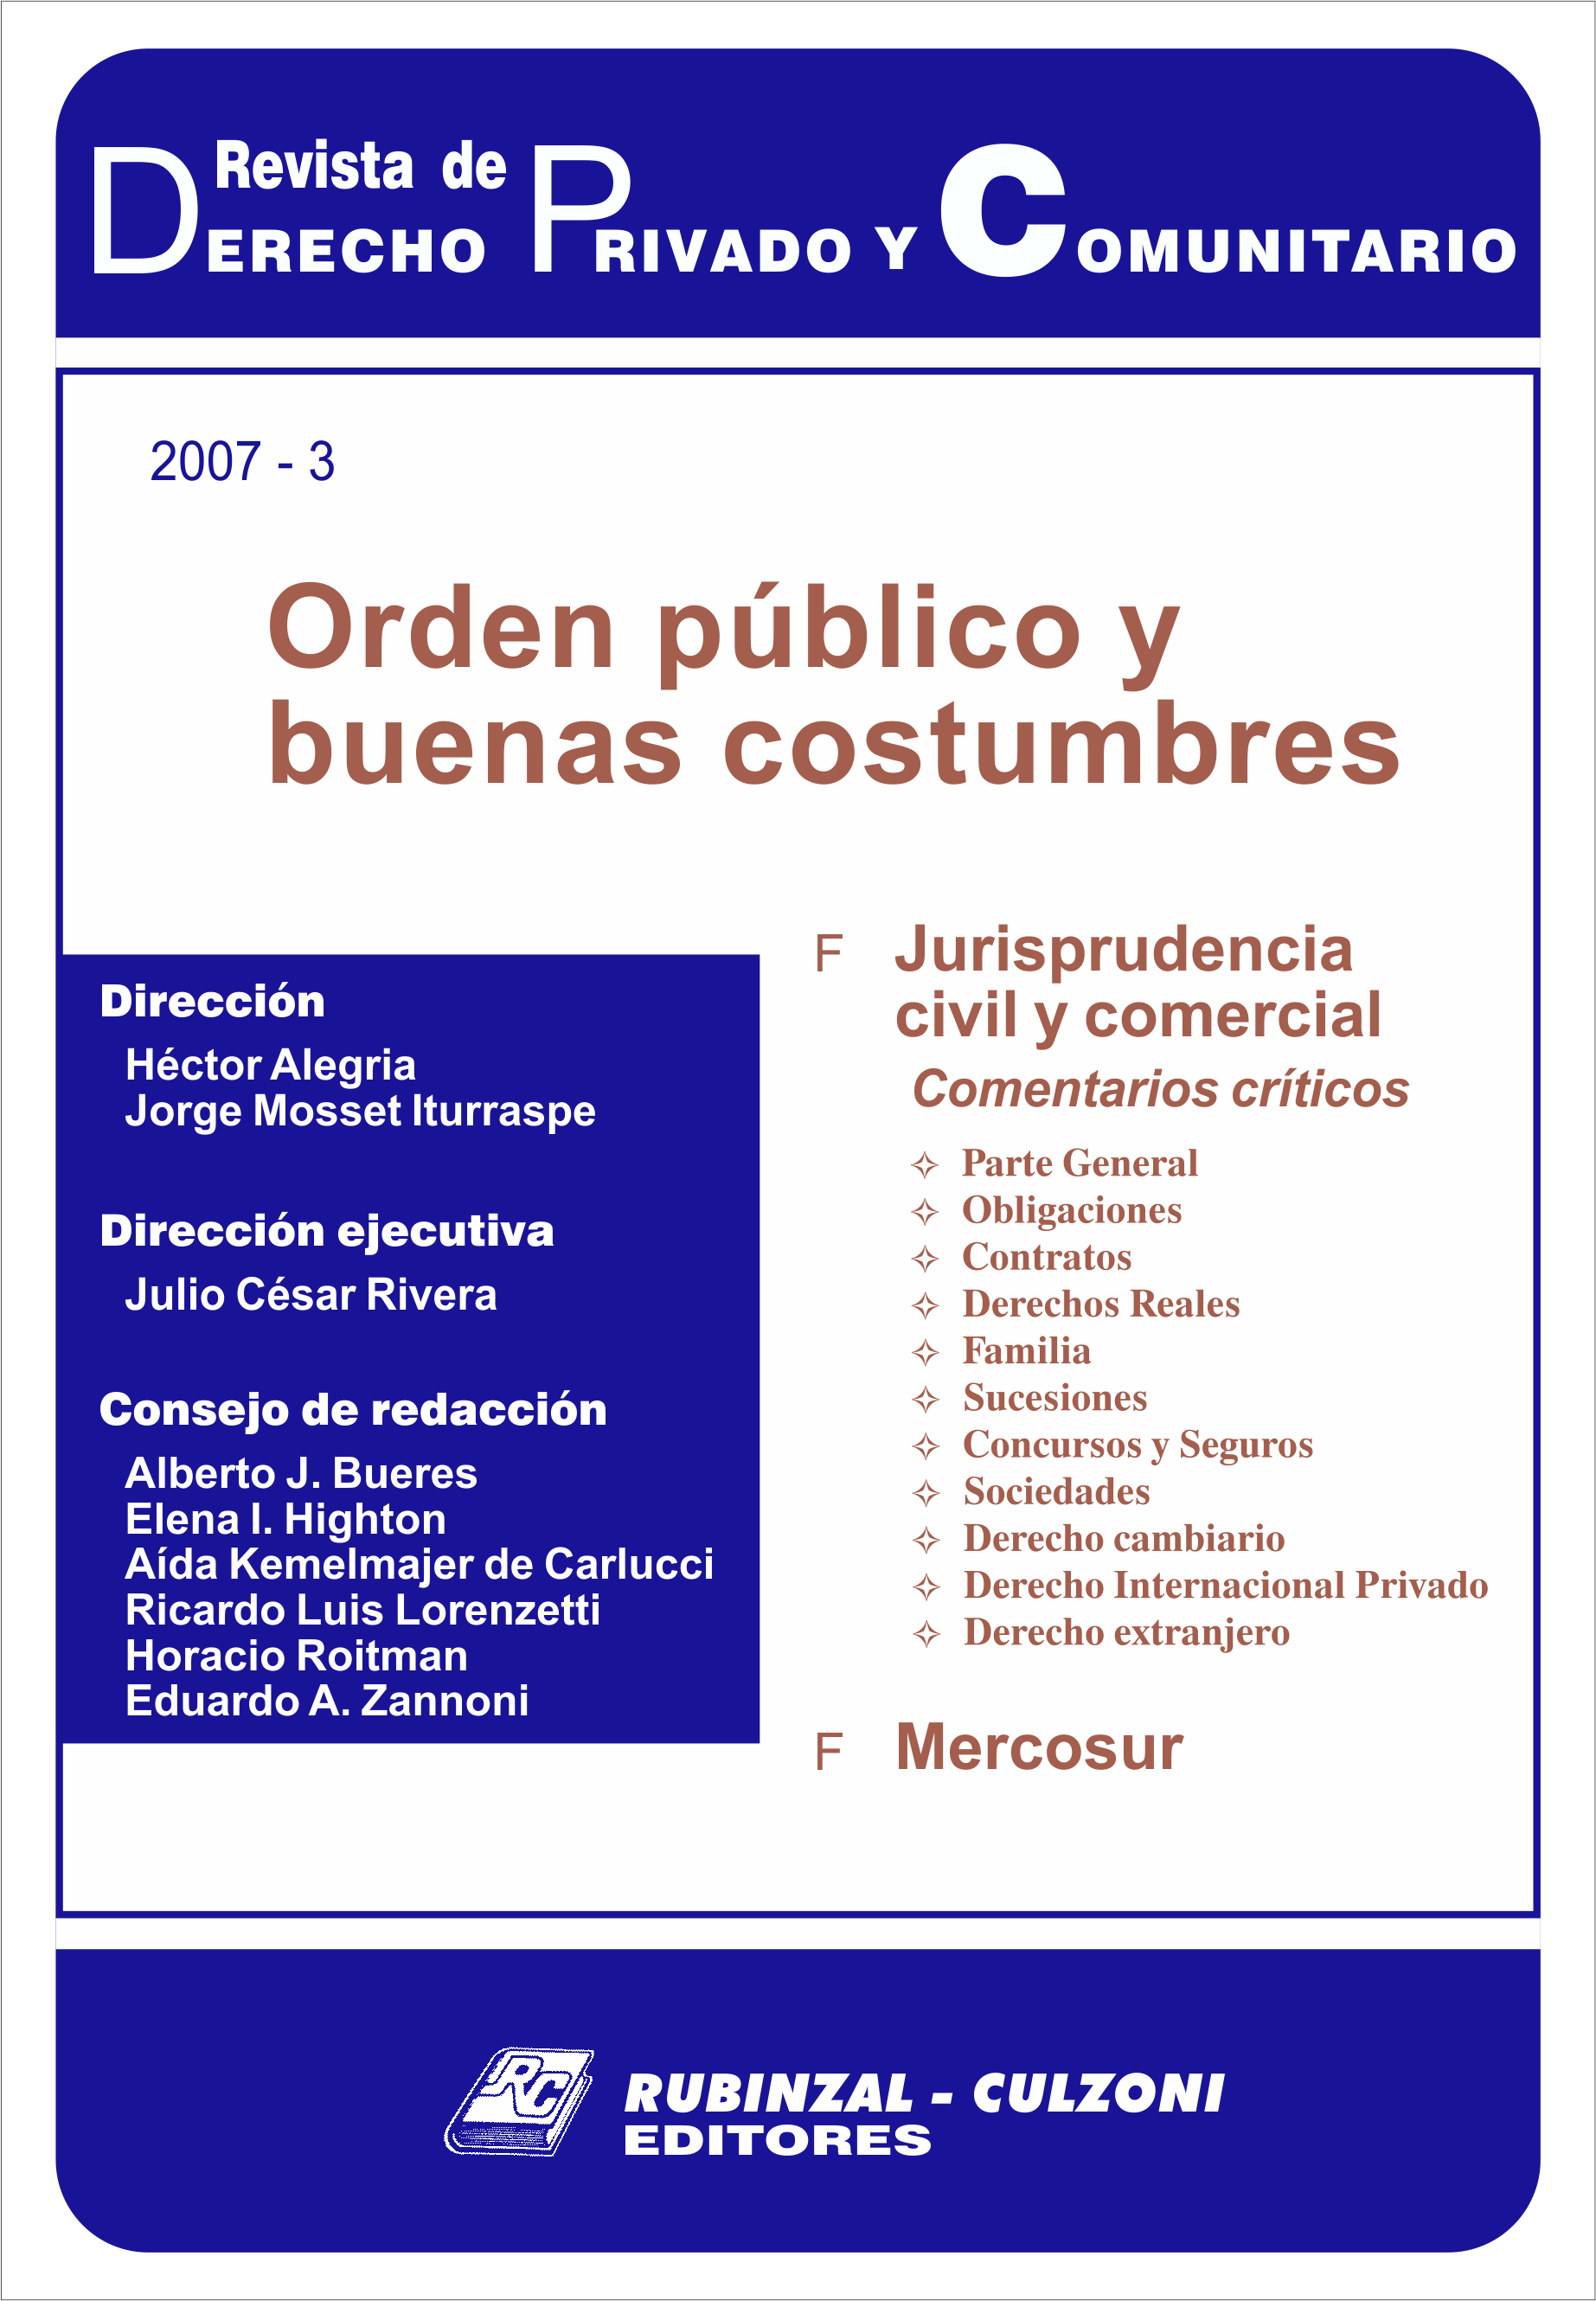 Revista de Derecho Privado y Comunitario - Orden público y buenas costumbres.